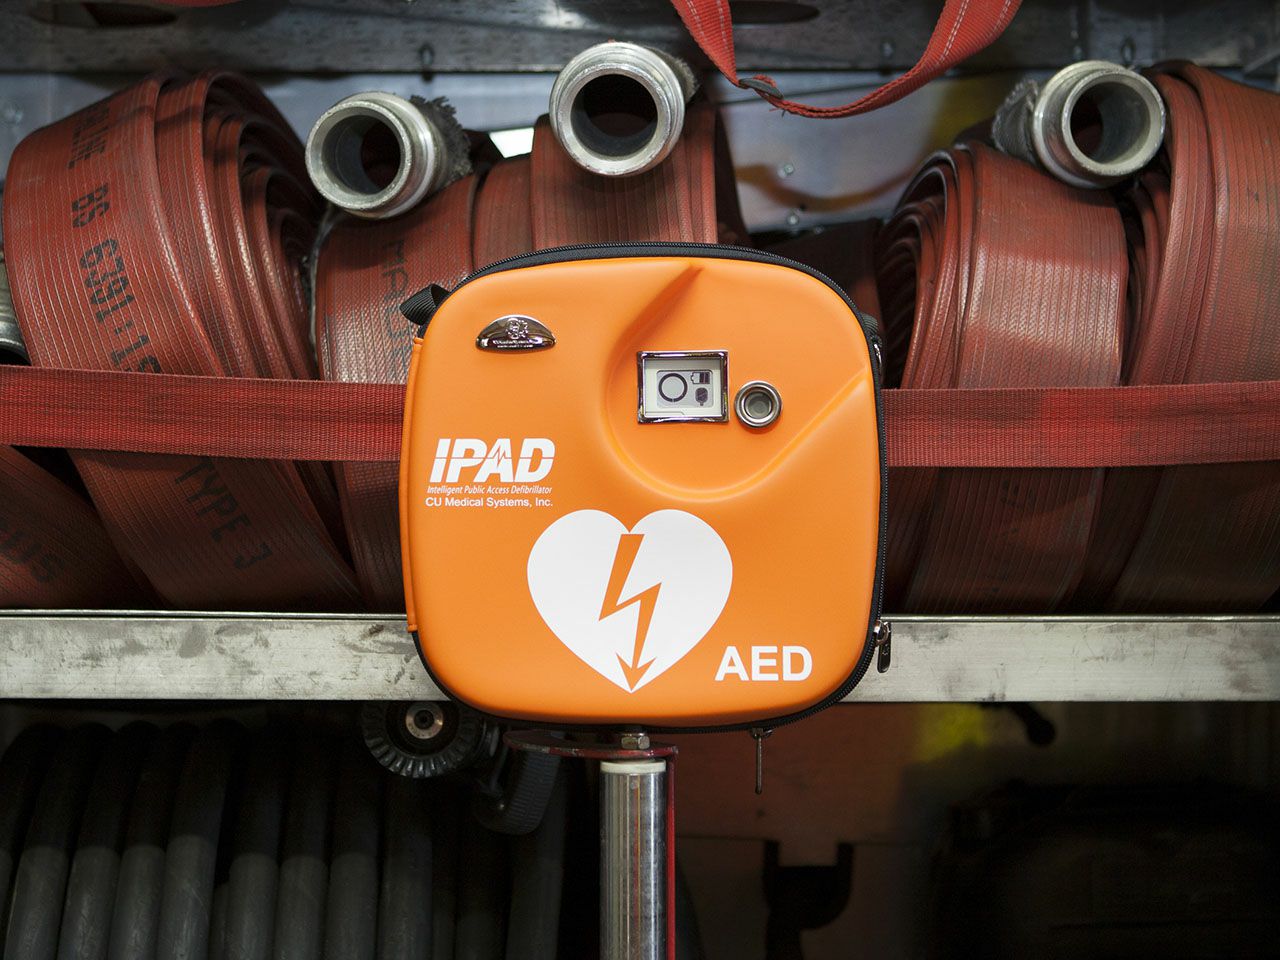 ipad-cu-sp1-defibrilator-automatski-aed-35339_3.jpg